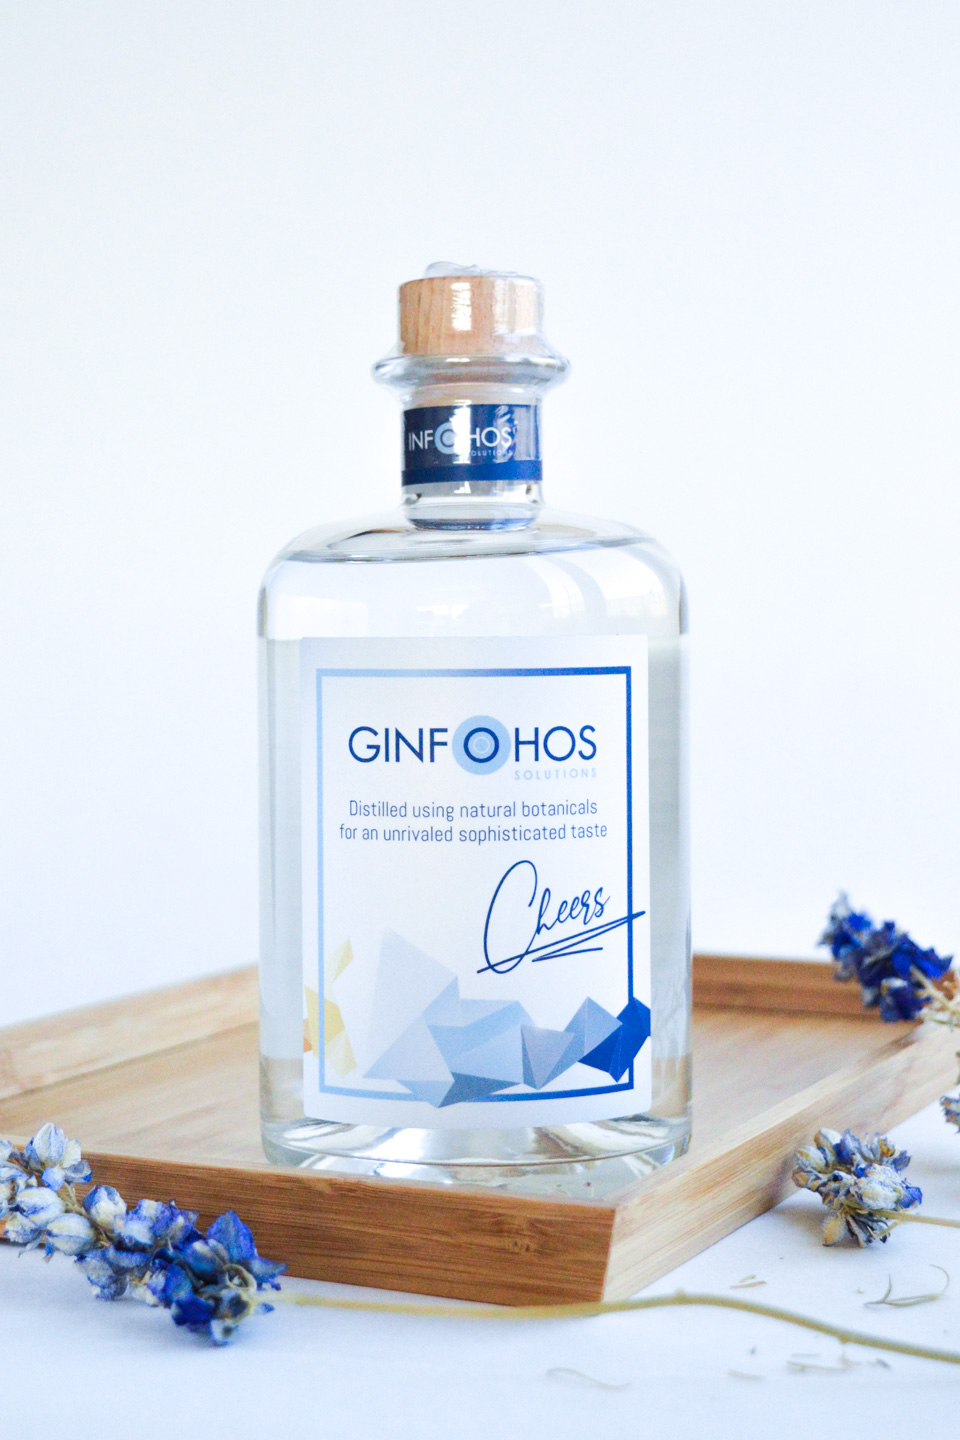 Ontwerp van een etiket voor Ginfohos. Een relatiegeschenk dat in de smaak valt :-) Cheers!